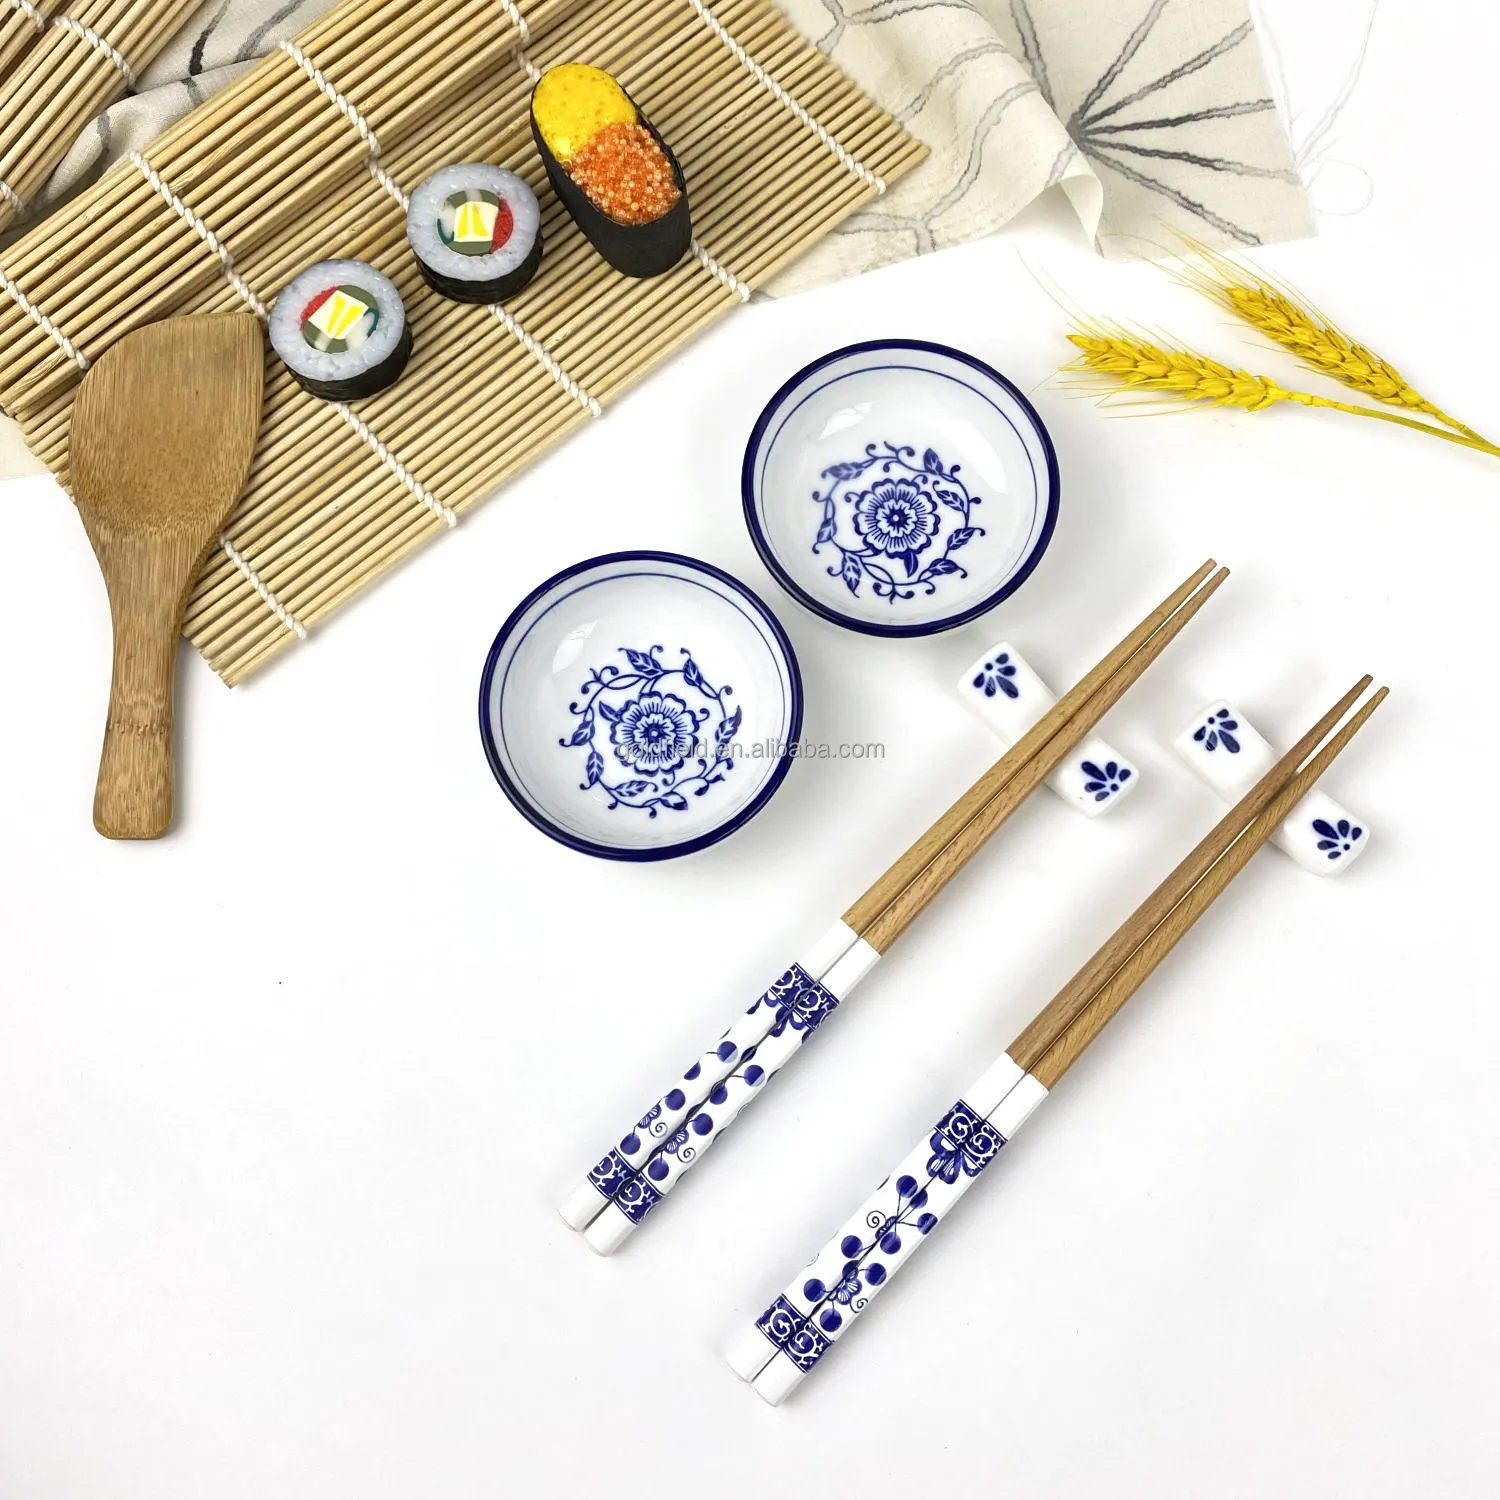 Kit de Sushi hecho en casa 9 piezas esteras de bambú espátula de arroz palillos de madera plato de cerámica patrón blanco y azul